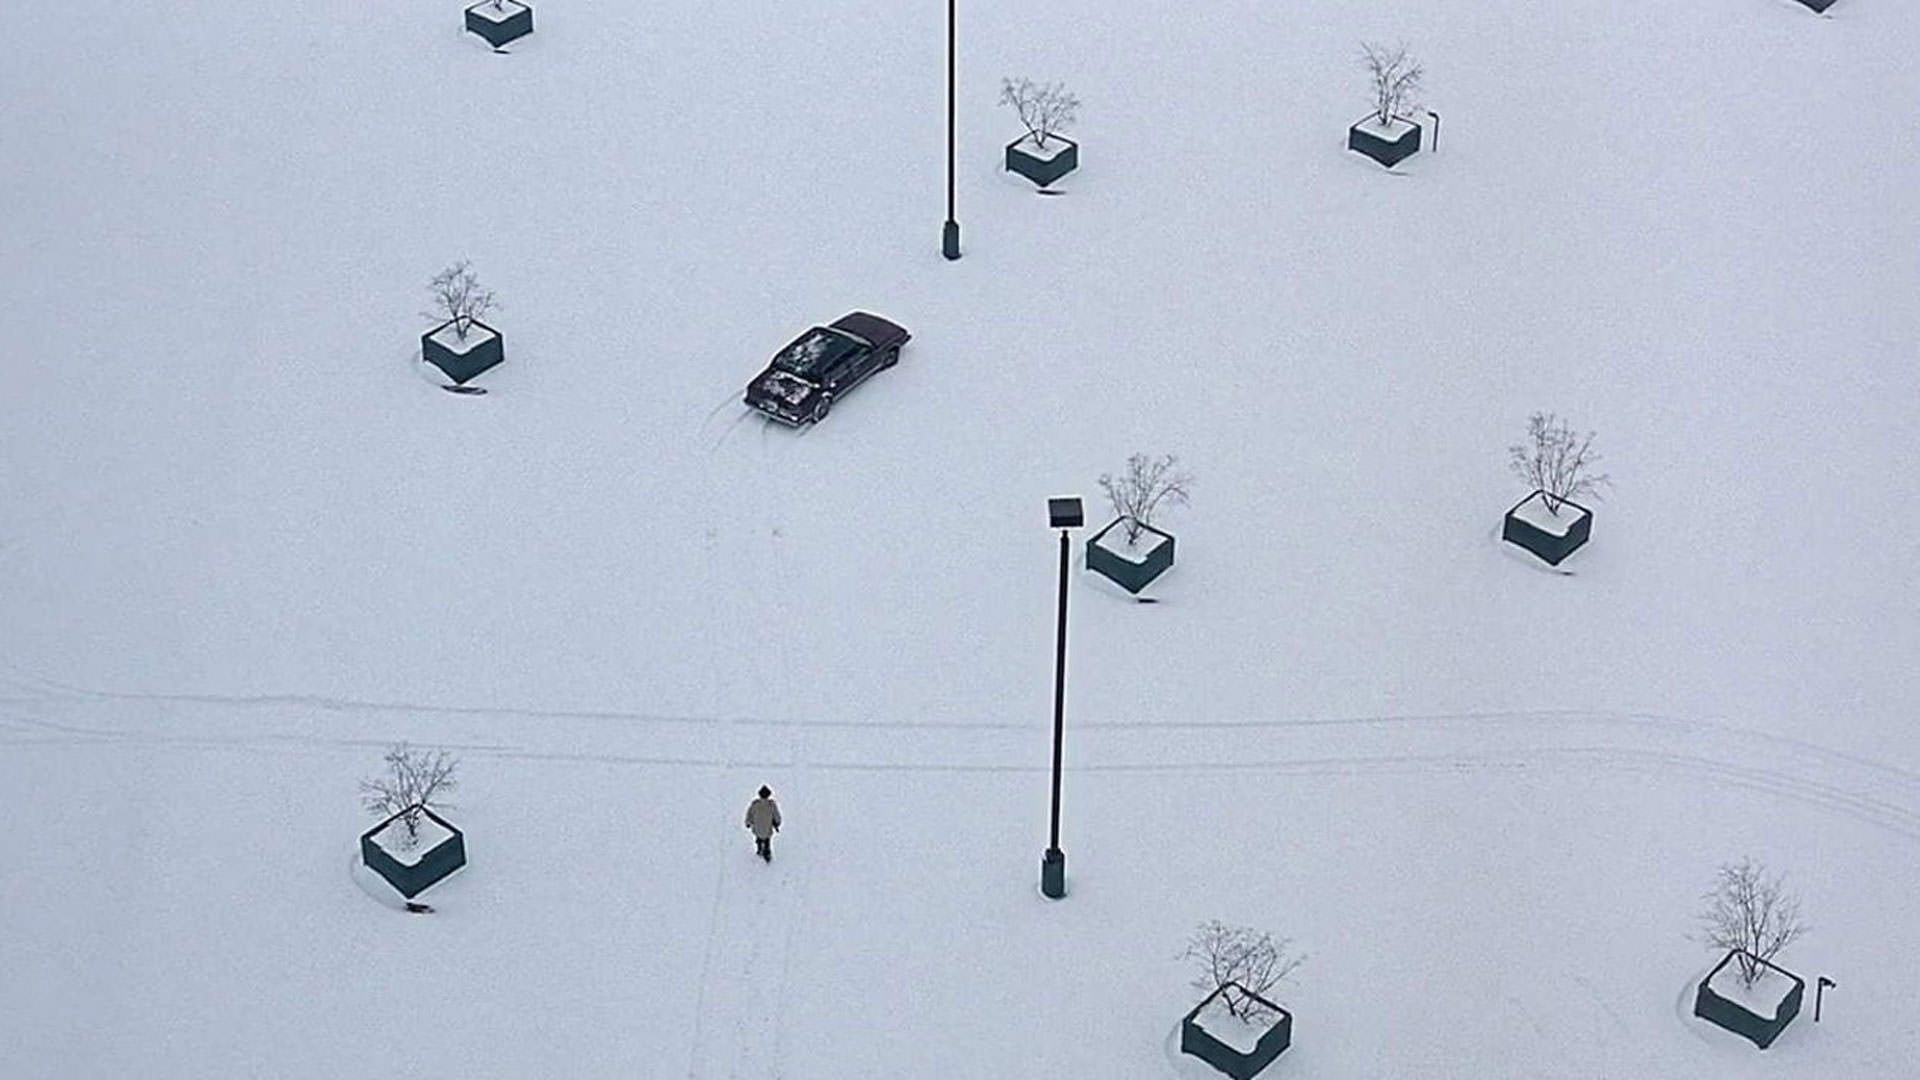 یک عکس باز از برف، چند درخت و یک ماشین در فیلم فارگو به کارگردانی برادران کوئن